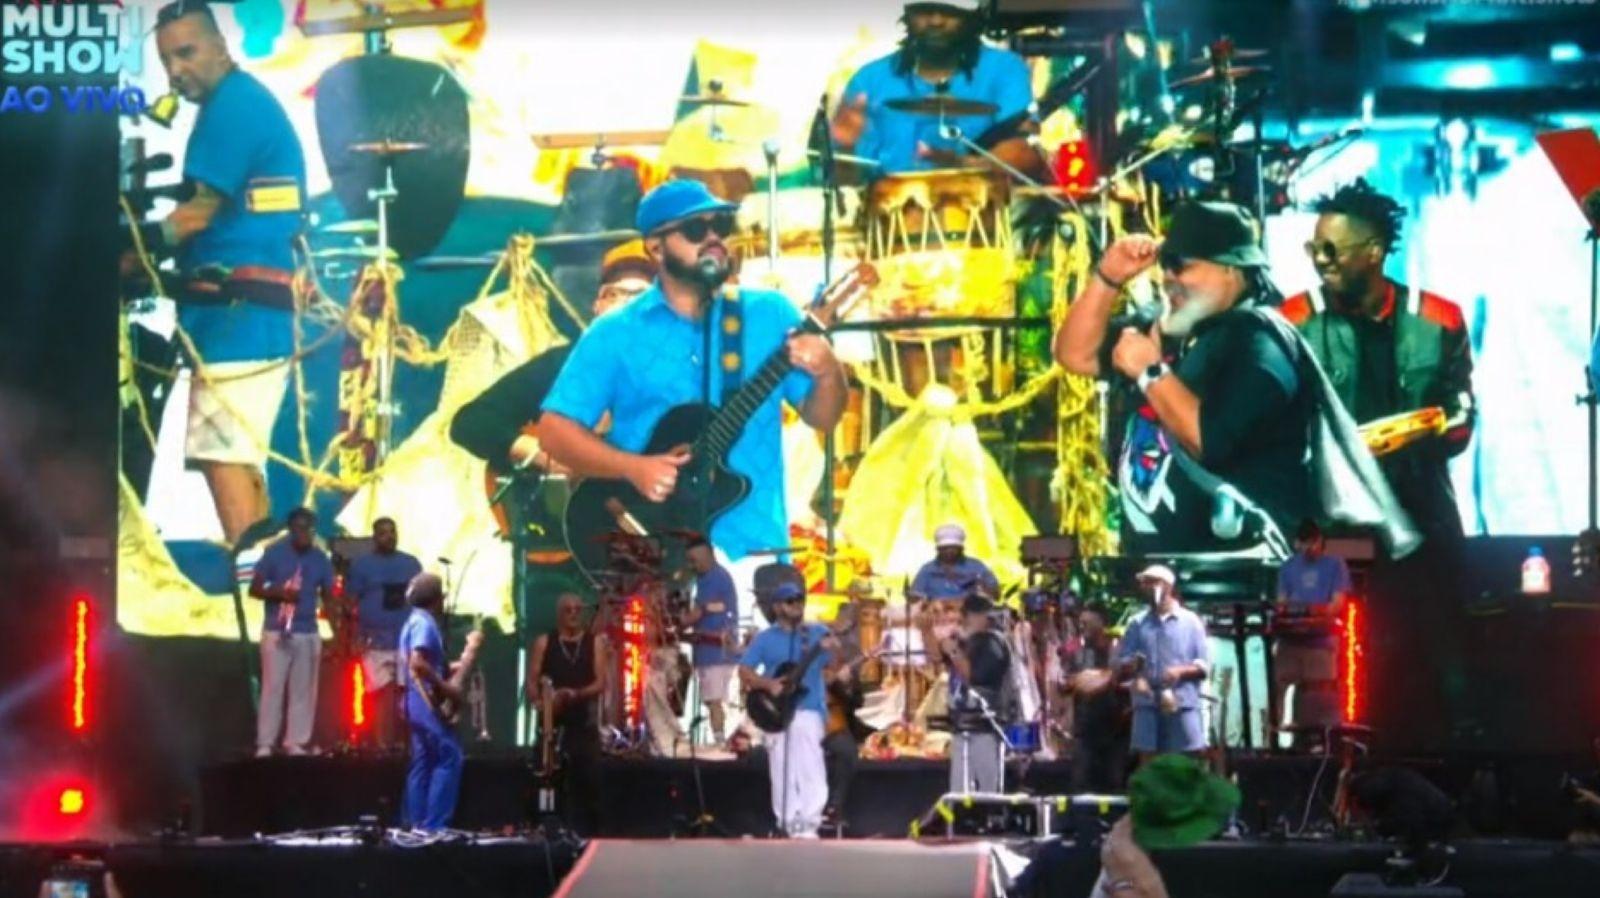 Gilson canta con Jorge Aragao en el escenario del atardecer, en el sexto día de rock in Rio - clon/multishow